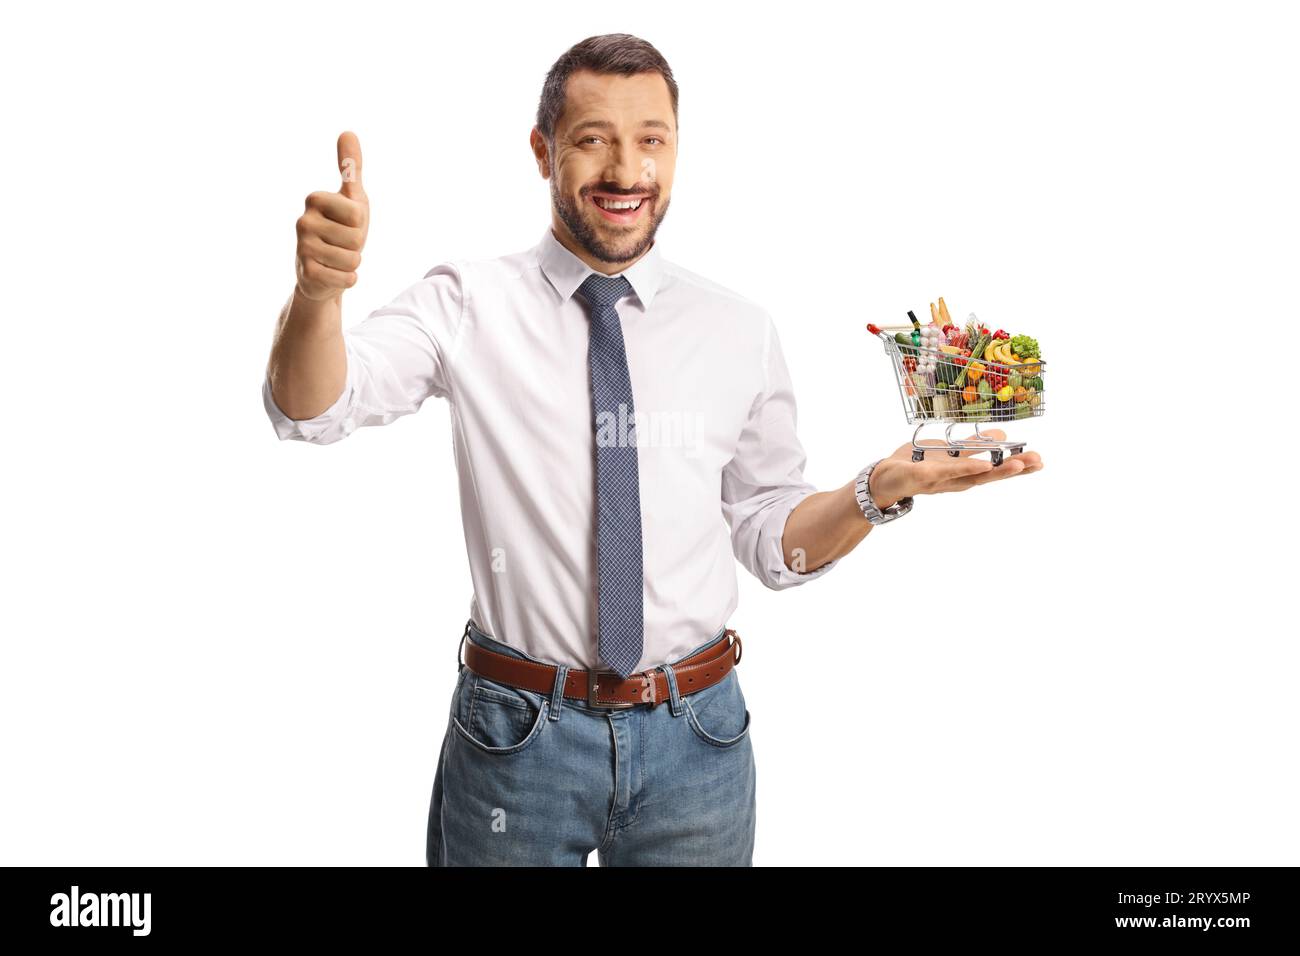 Junger, lächelnder Mann, der einen kleinen Einkaufswagen mit Essen hält und Daumen hoch bewegt, isoliert auf weißem Hintergrund Stockfoto